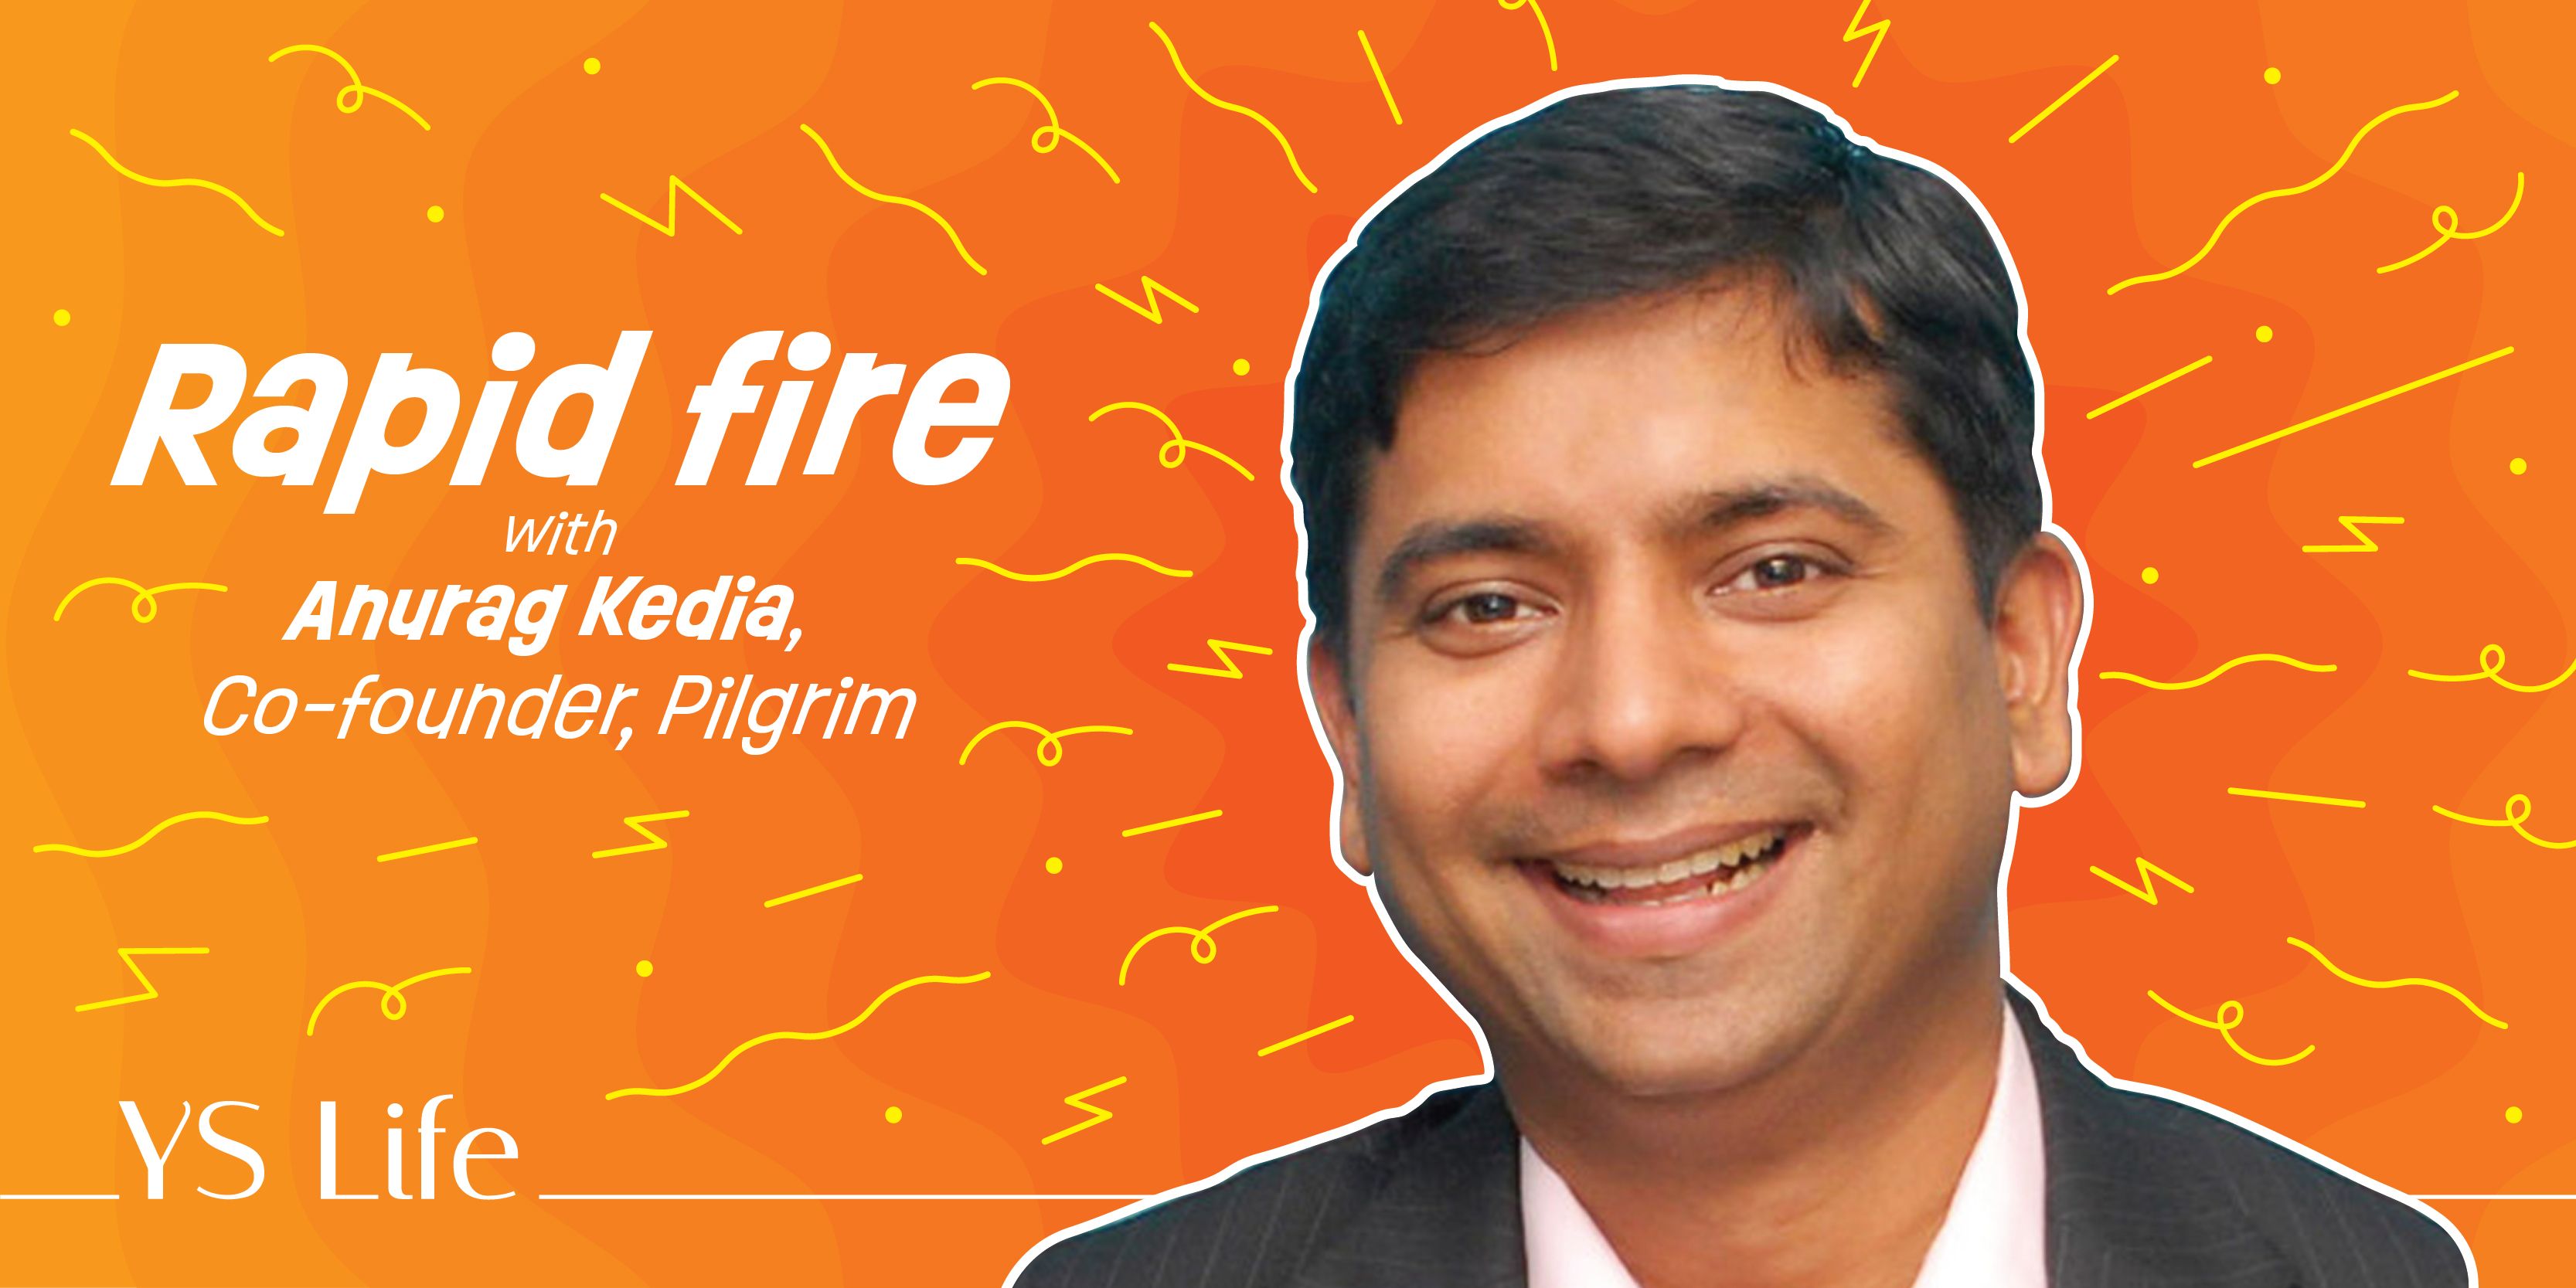 Rapid fire with Anurag Kedia, Co-founder, Pilgrim 